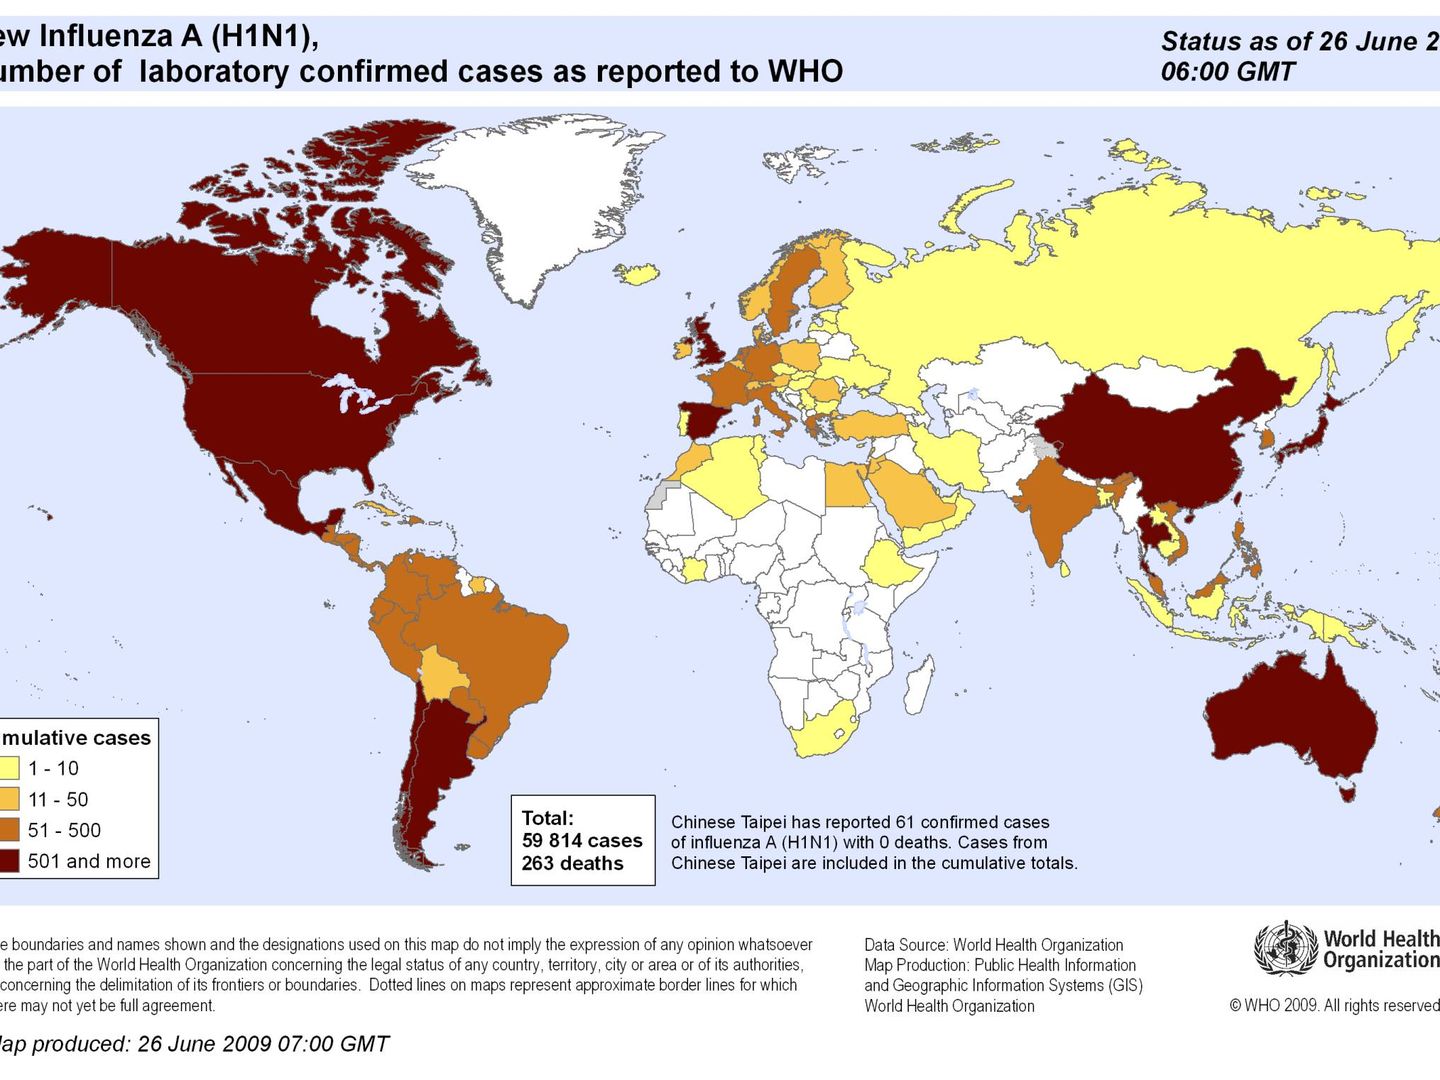 Mapa del impacto de la gripe A en junio de 2009.